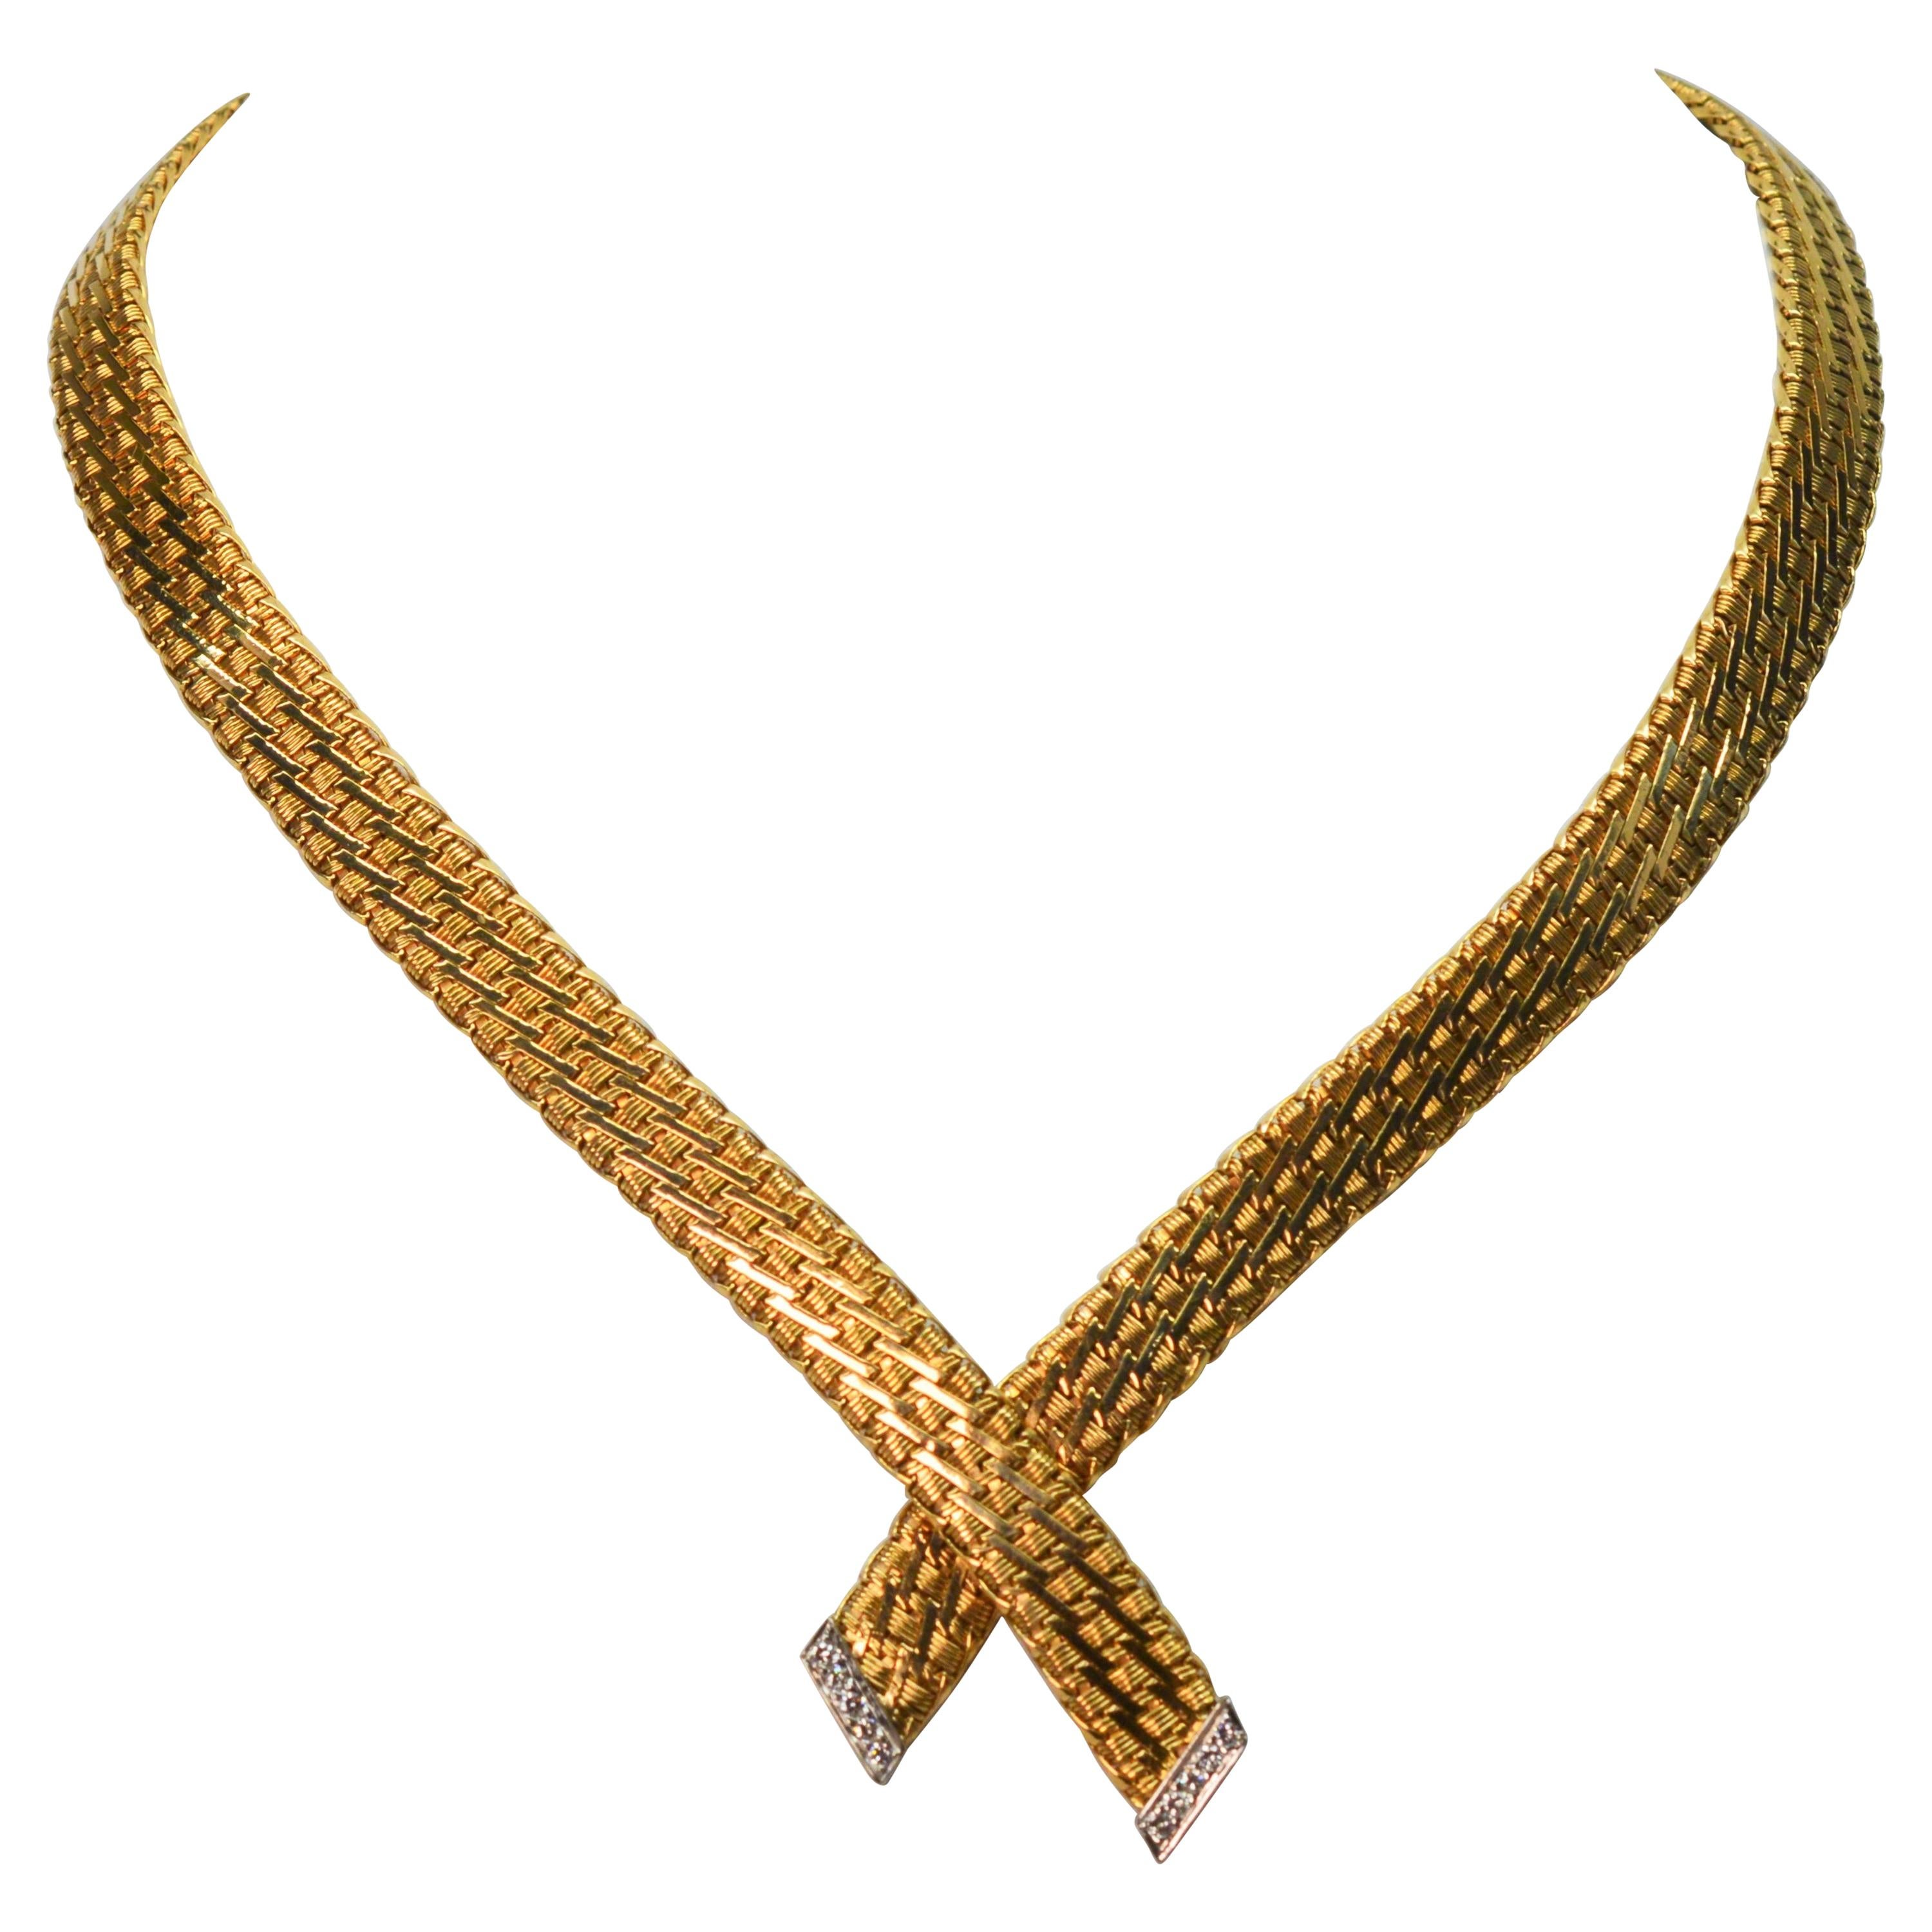 Collier ras du cou à nœud en forme de corde en or jaune avec accents en or blanc et diamants